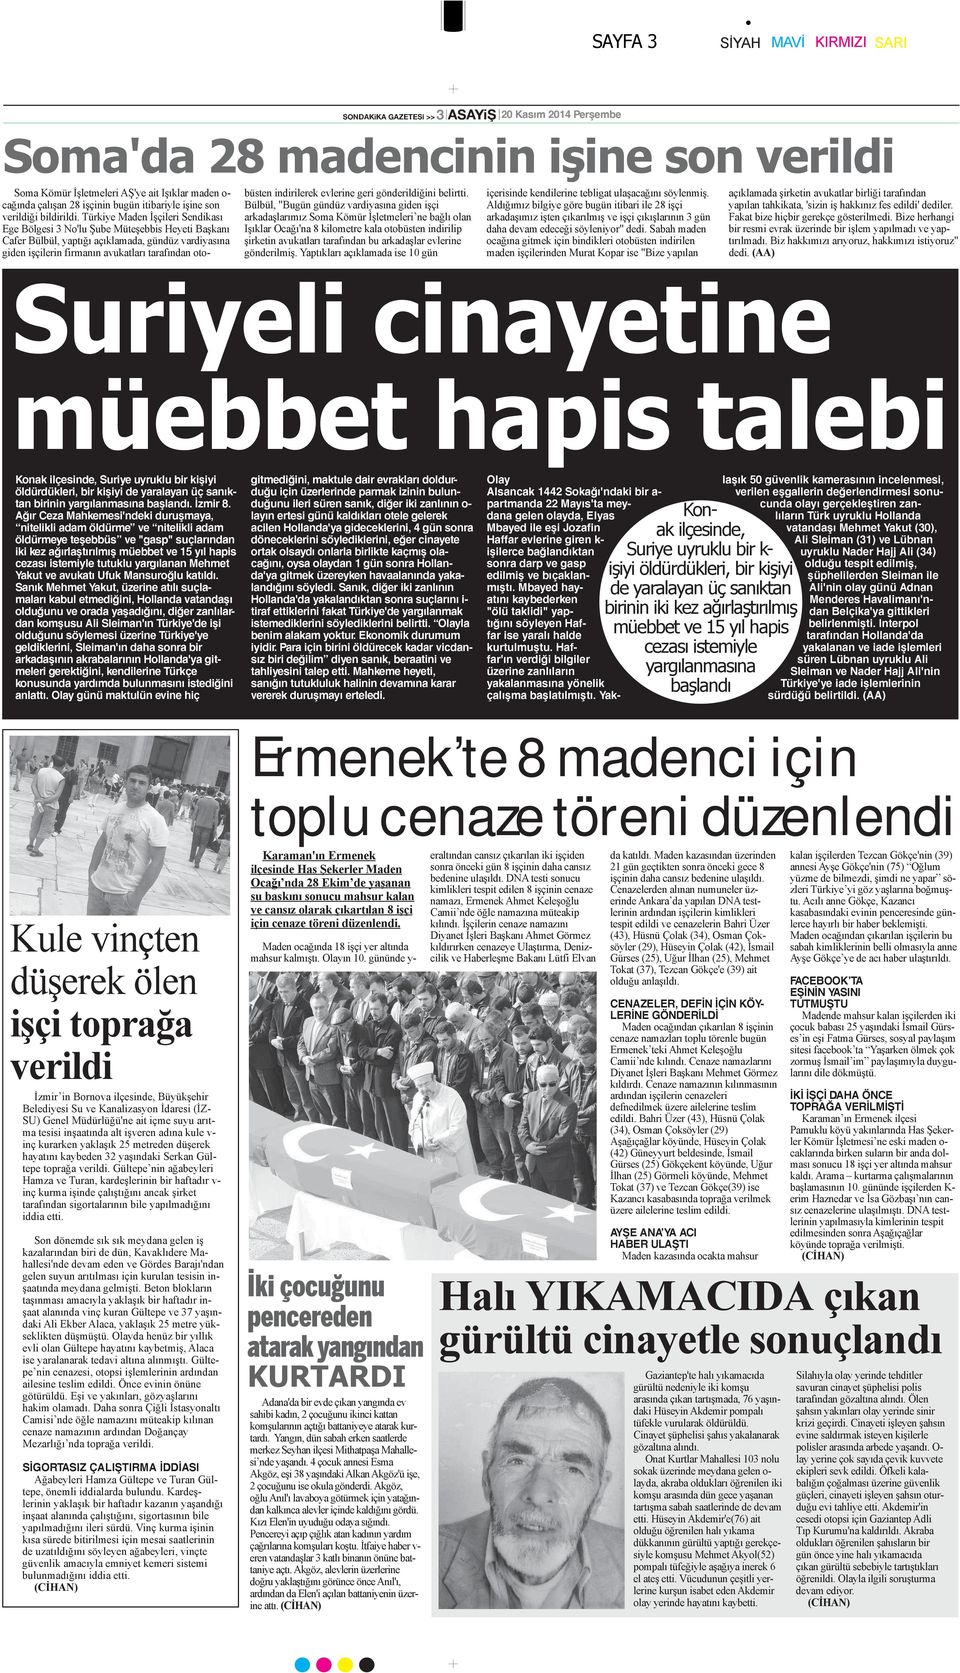 Türkiye Maden İşçileri Sendikası Ege Bölgesi 3 No'lu Şube Müteşebbis Heyeti Başkanı Cafer Bülbül, yaptığı açıklamada, gündüz vardiyasına giden işçilerin firmanın avukatları tarafından otobüsten